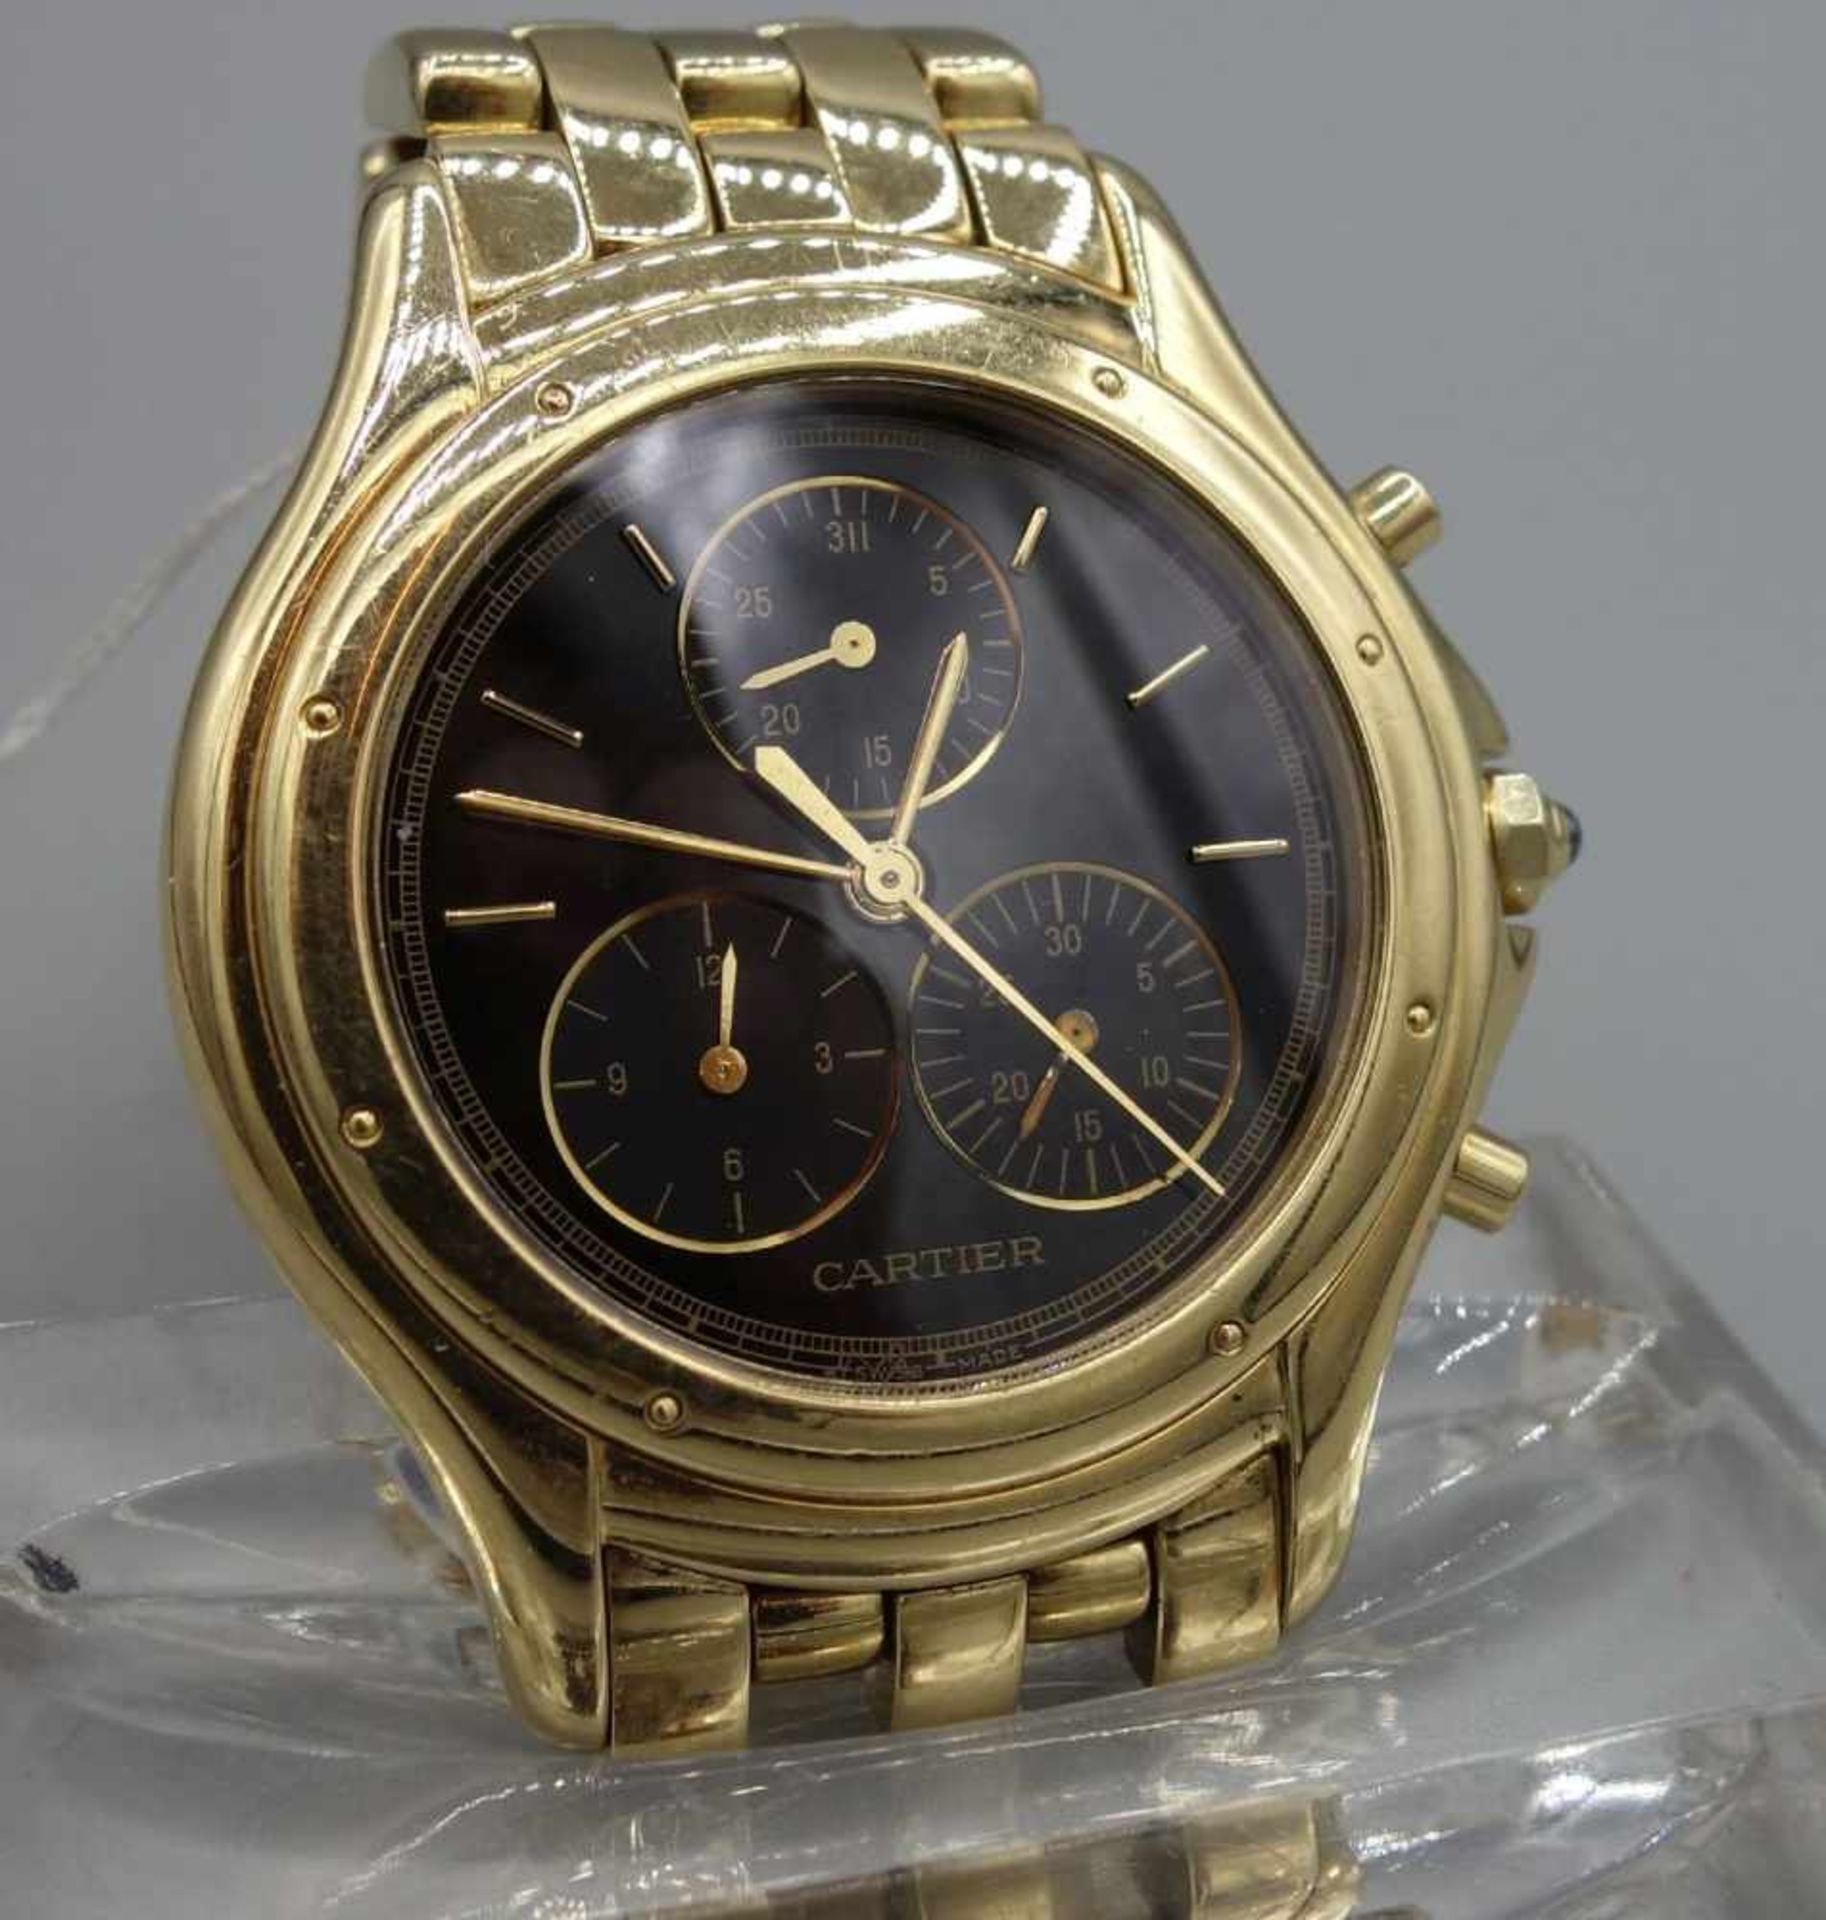 GOLDENE ARMBANDUHR / CHRONOGRAPH - CARTIER COUGAR / wristwatch, Quarz-Uhr, Manufaktur Cartier SA / - Bild 2 aus 7